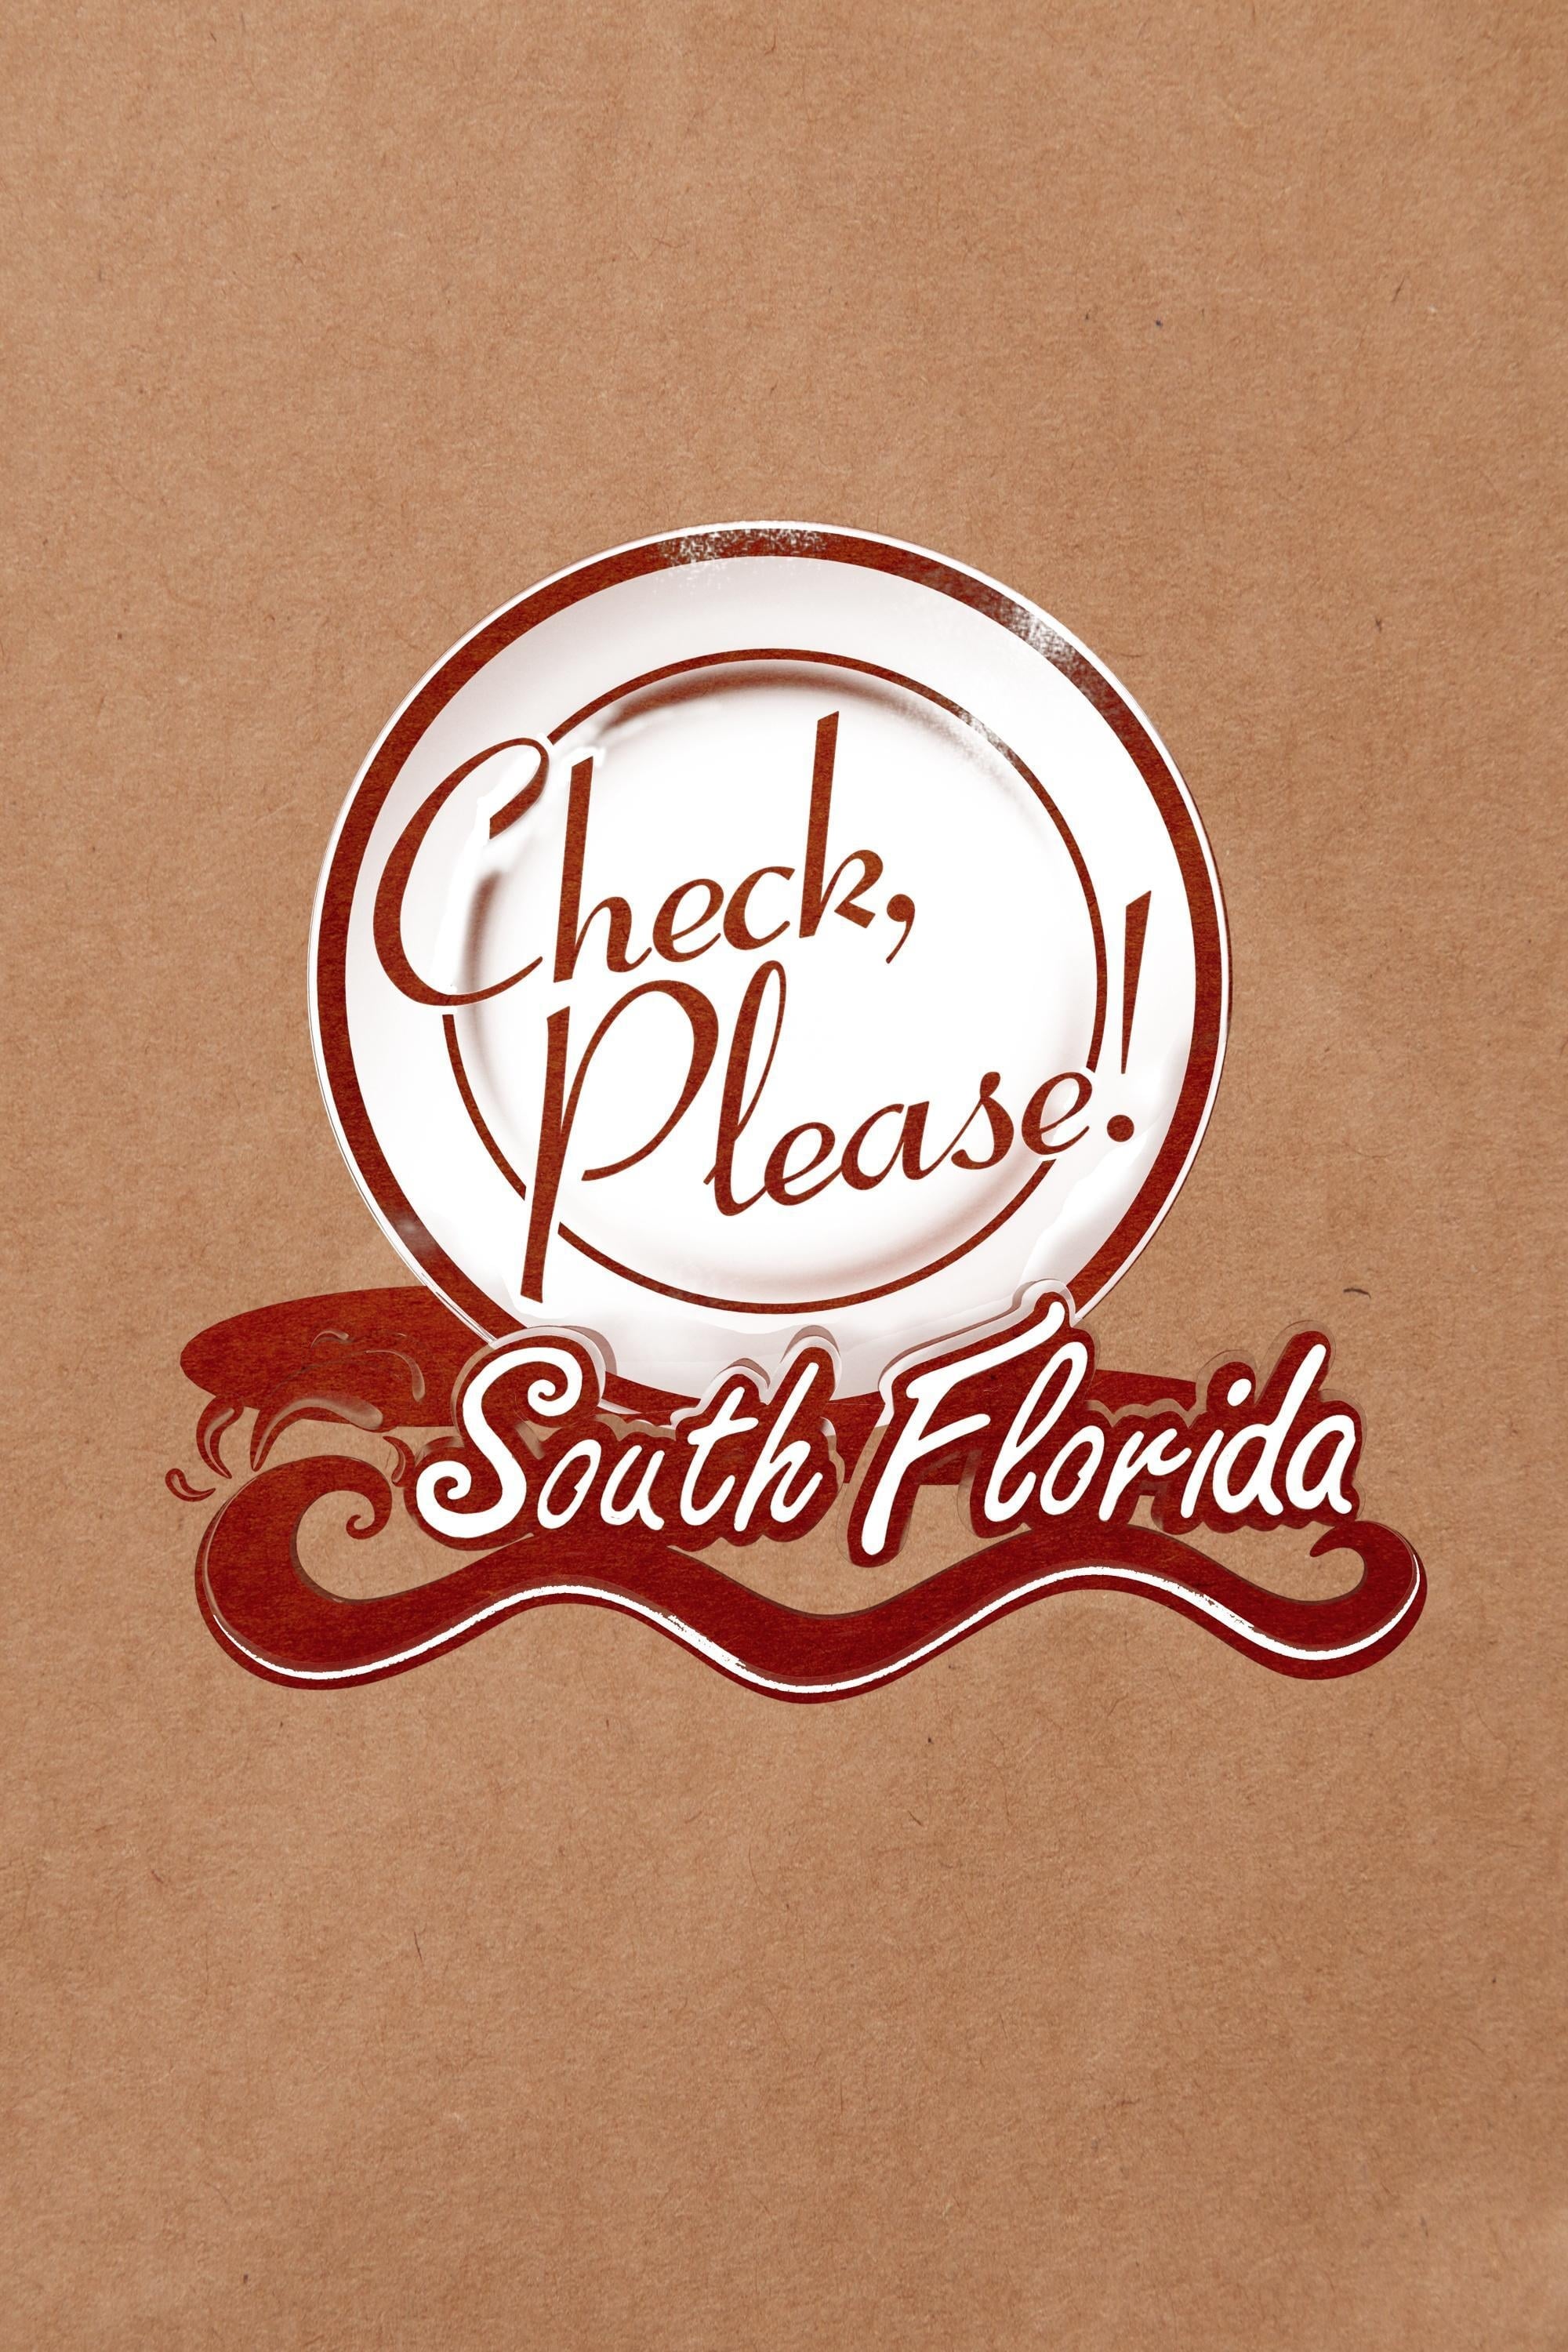 Check, Please! South Florida